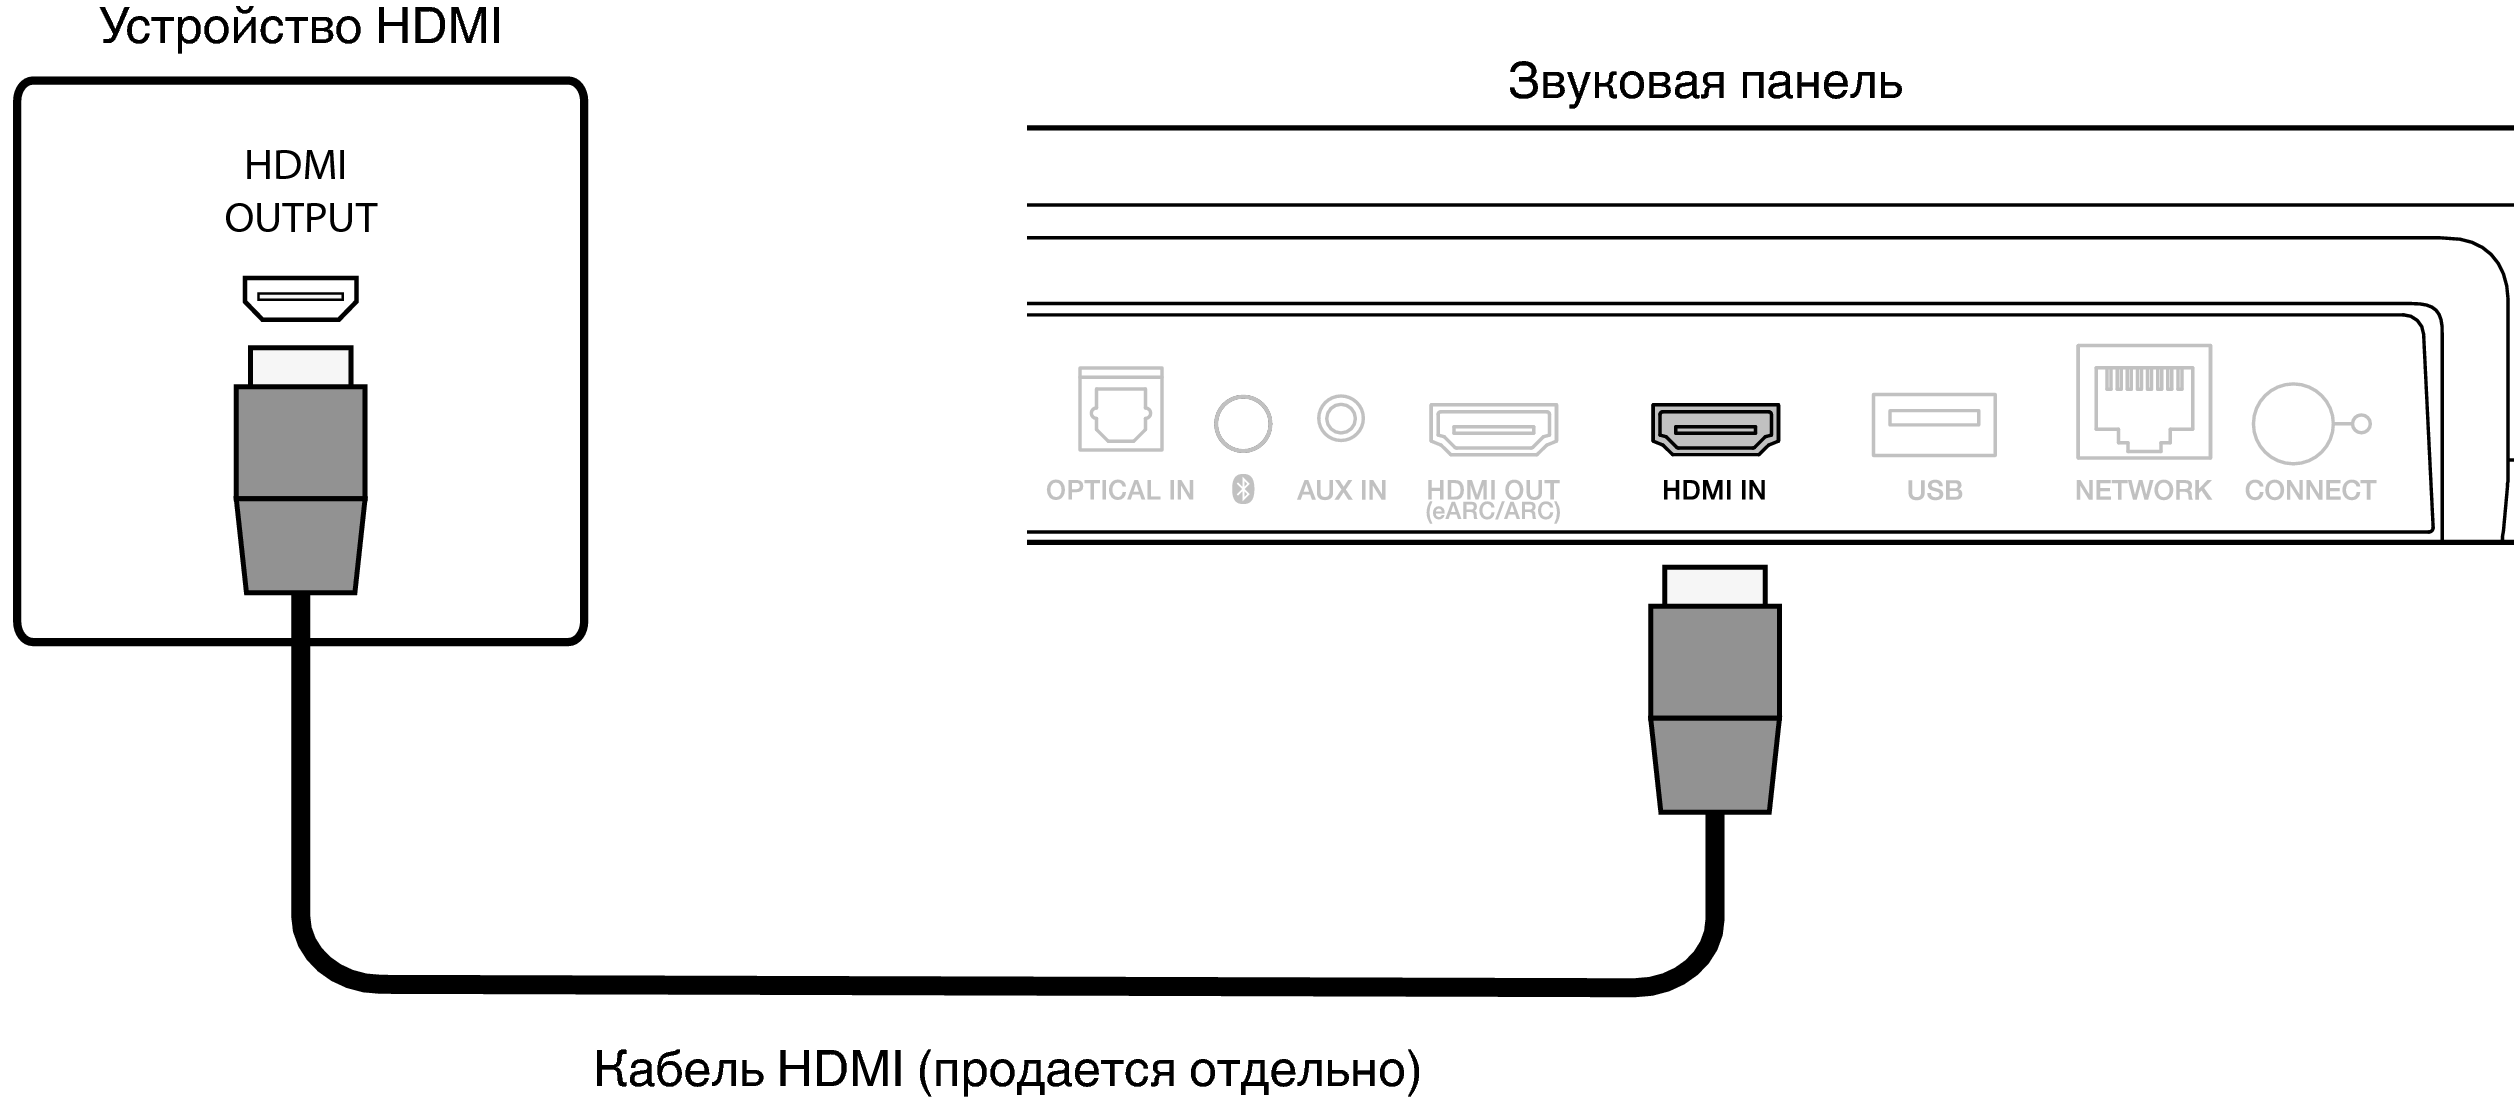 Conne HDMI IN SB550